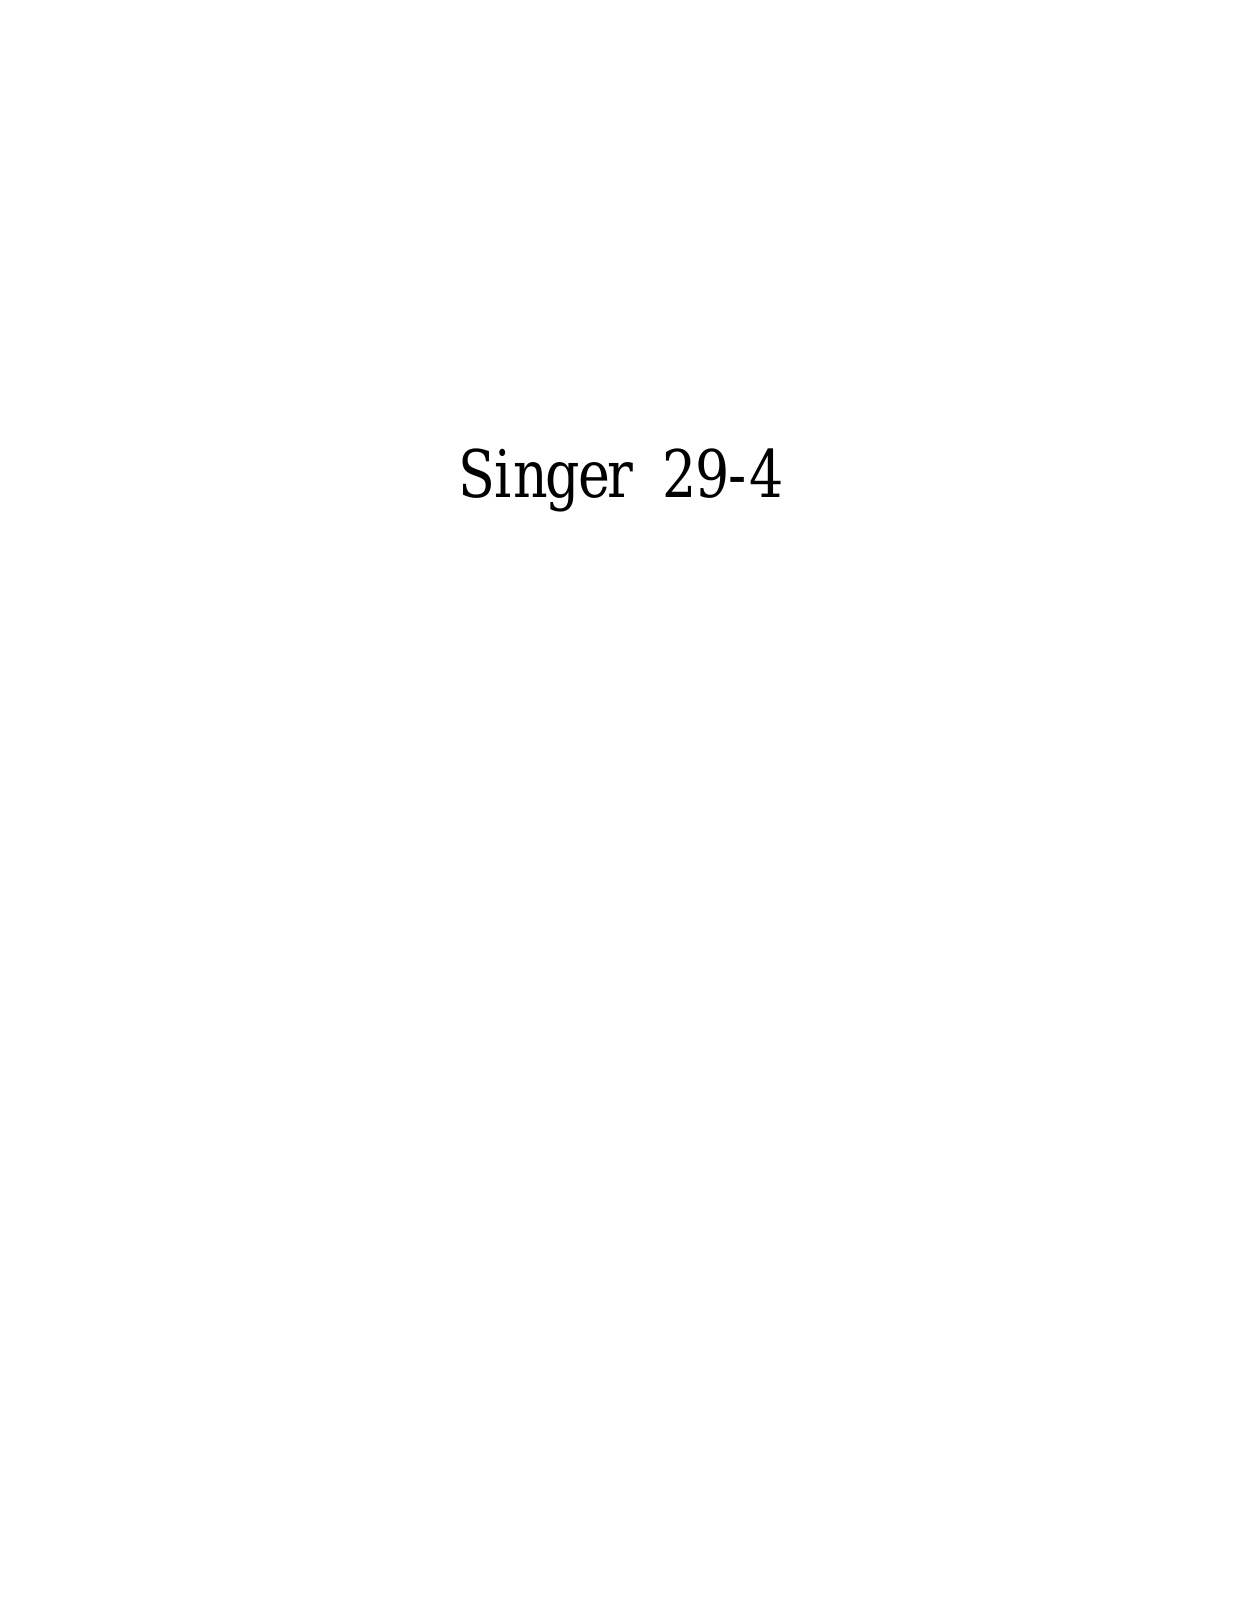 SINGER 29-4 Parts List